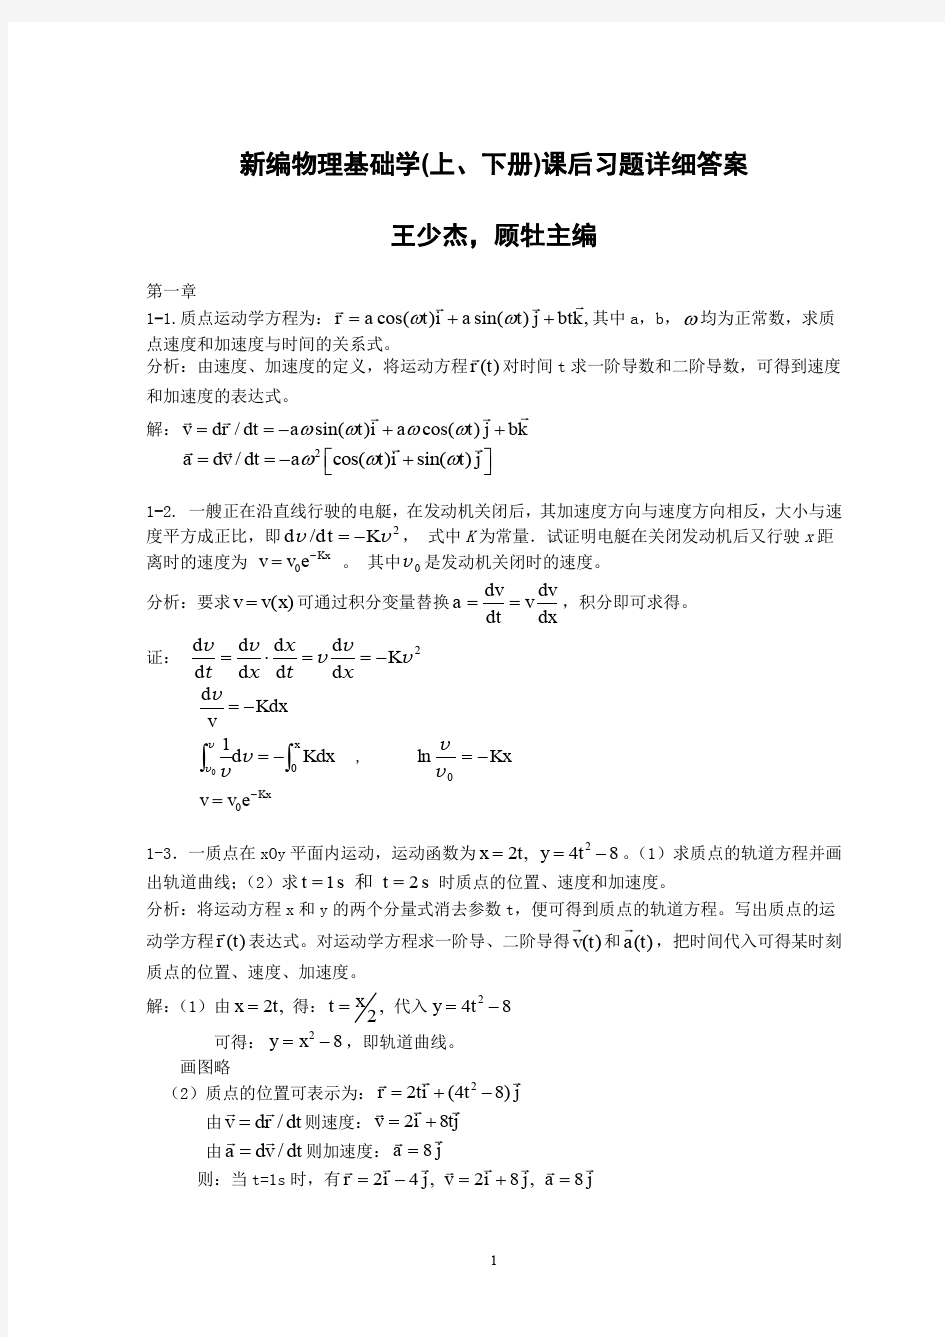 新编物理基础学(上下册)课后习题详细答案 王少杰 顾社主编